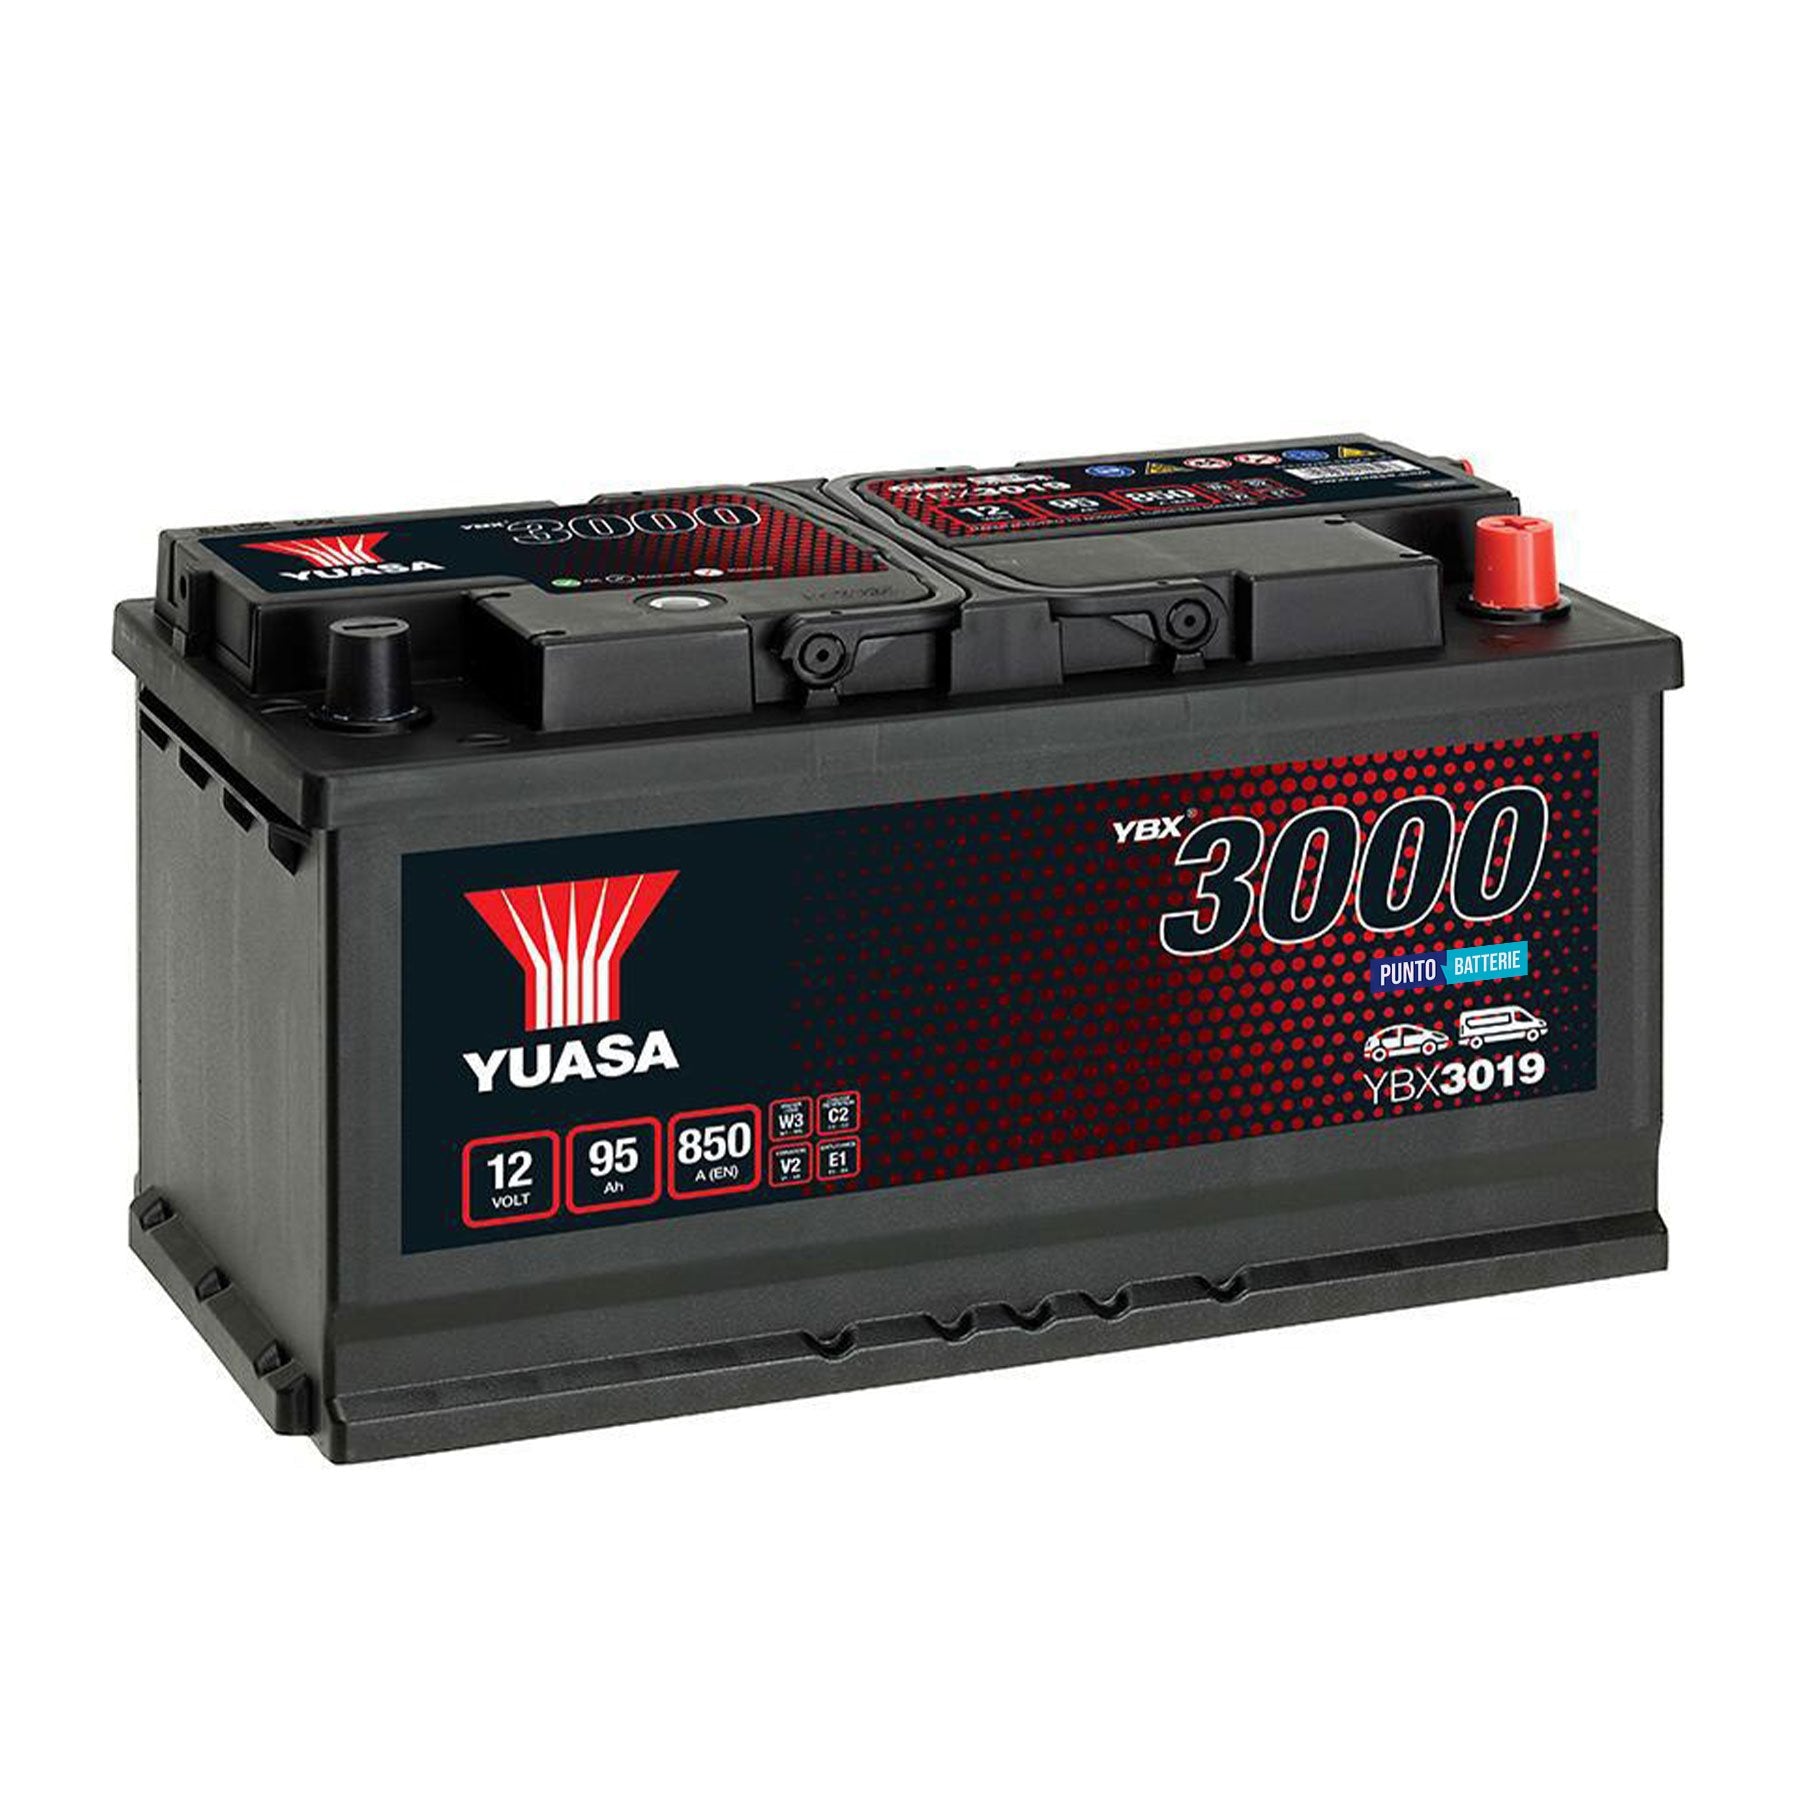 Batteria originale Yuasa YBX3000 YBX3019, dimensioni 353 x 175 x 190, polo positivo a destra, 12 volt, 95 amperora, 850 ampere. Batteria per auto e veicoli leggeri.